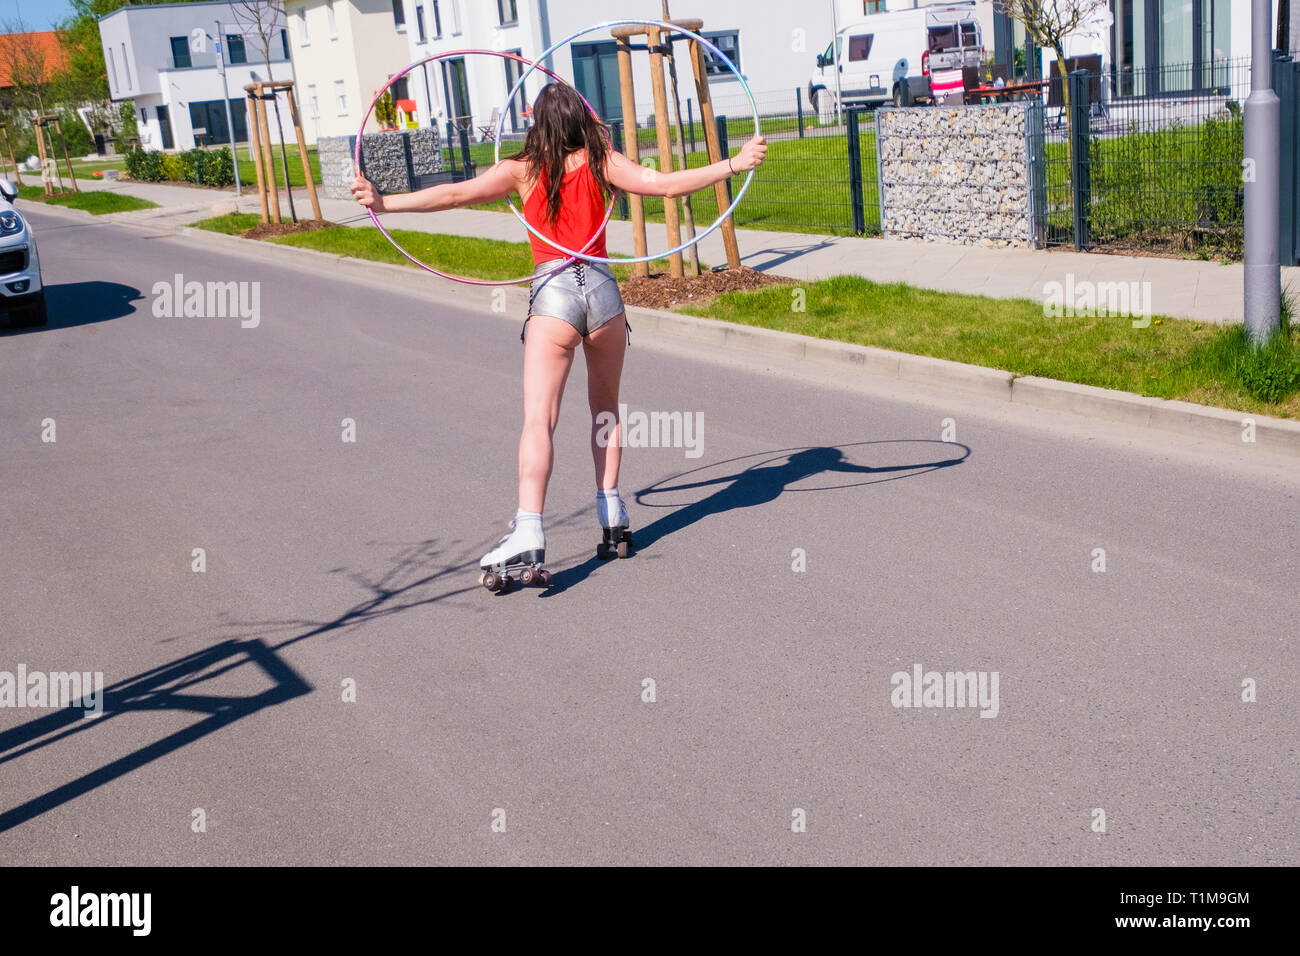 Frau in kurzen Shorts mit Kunststoffreifen Rollschuh-Skating auf der sonnigen Straße in der Nachbarschaft Stockfoto